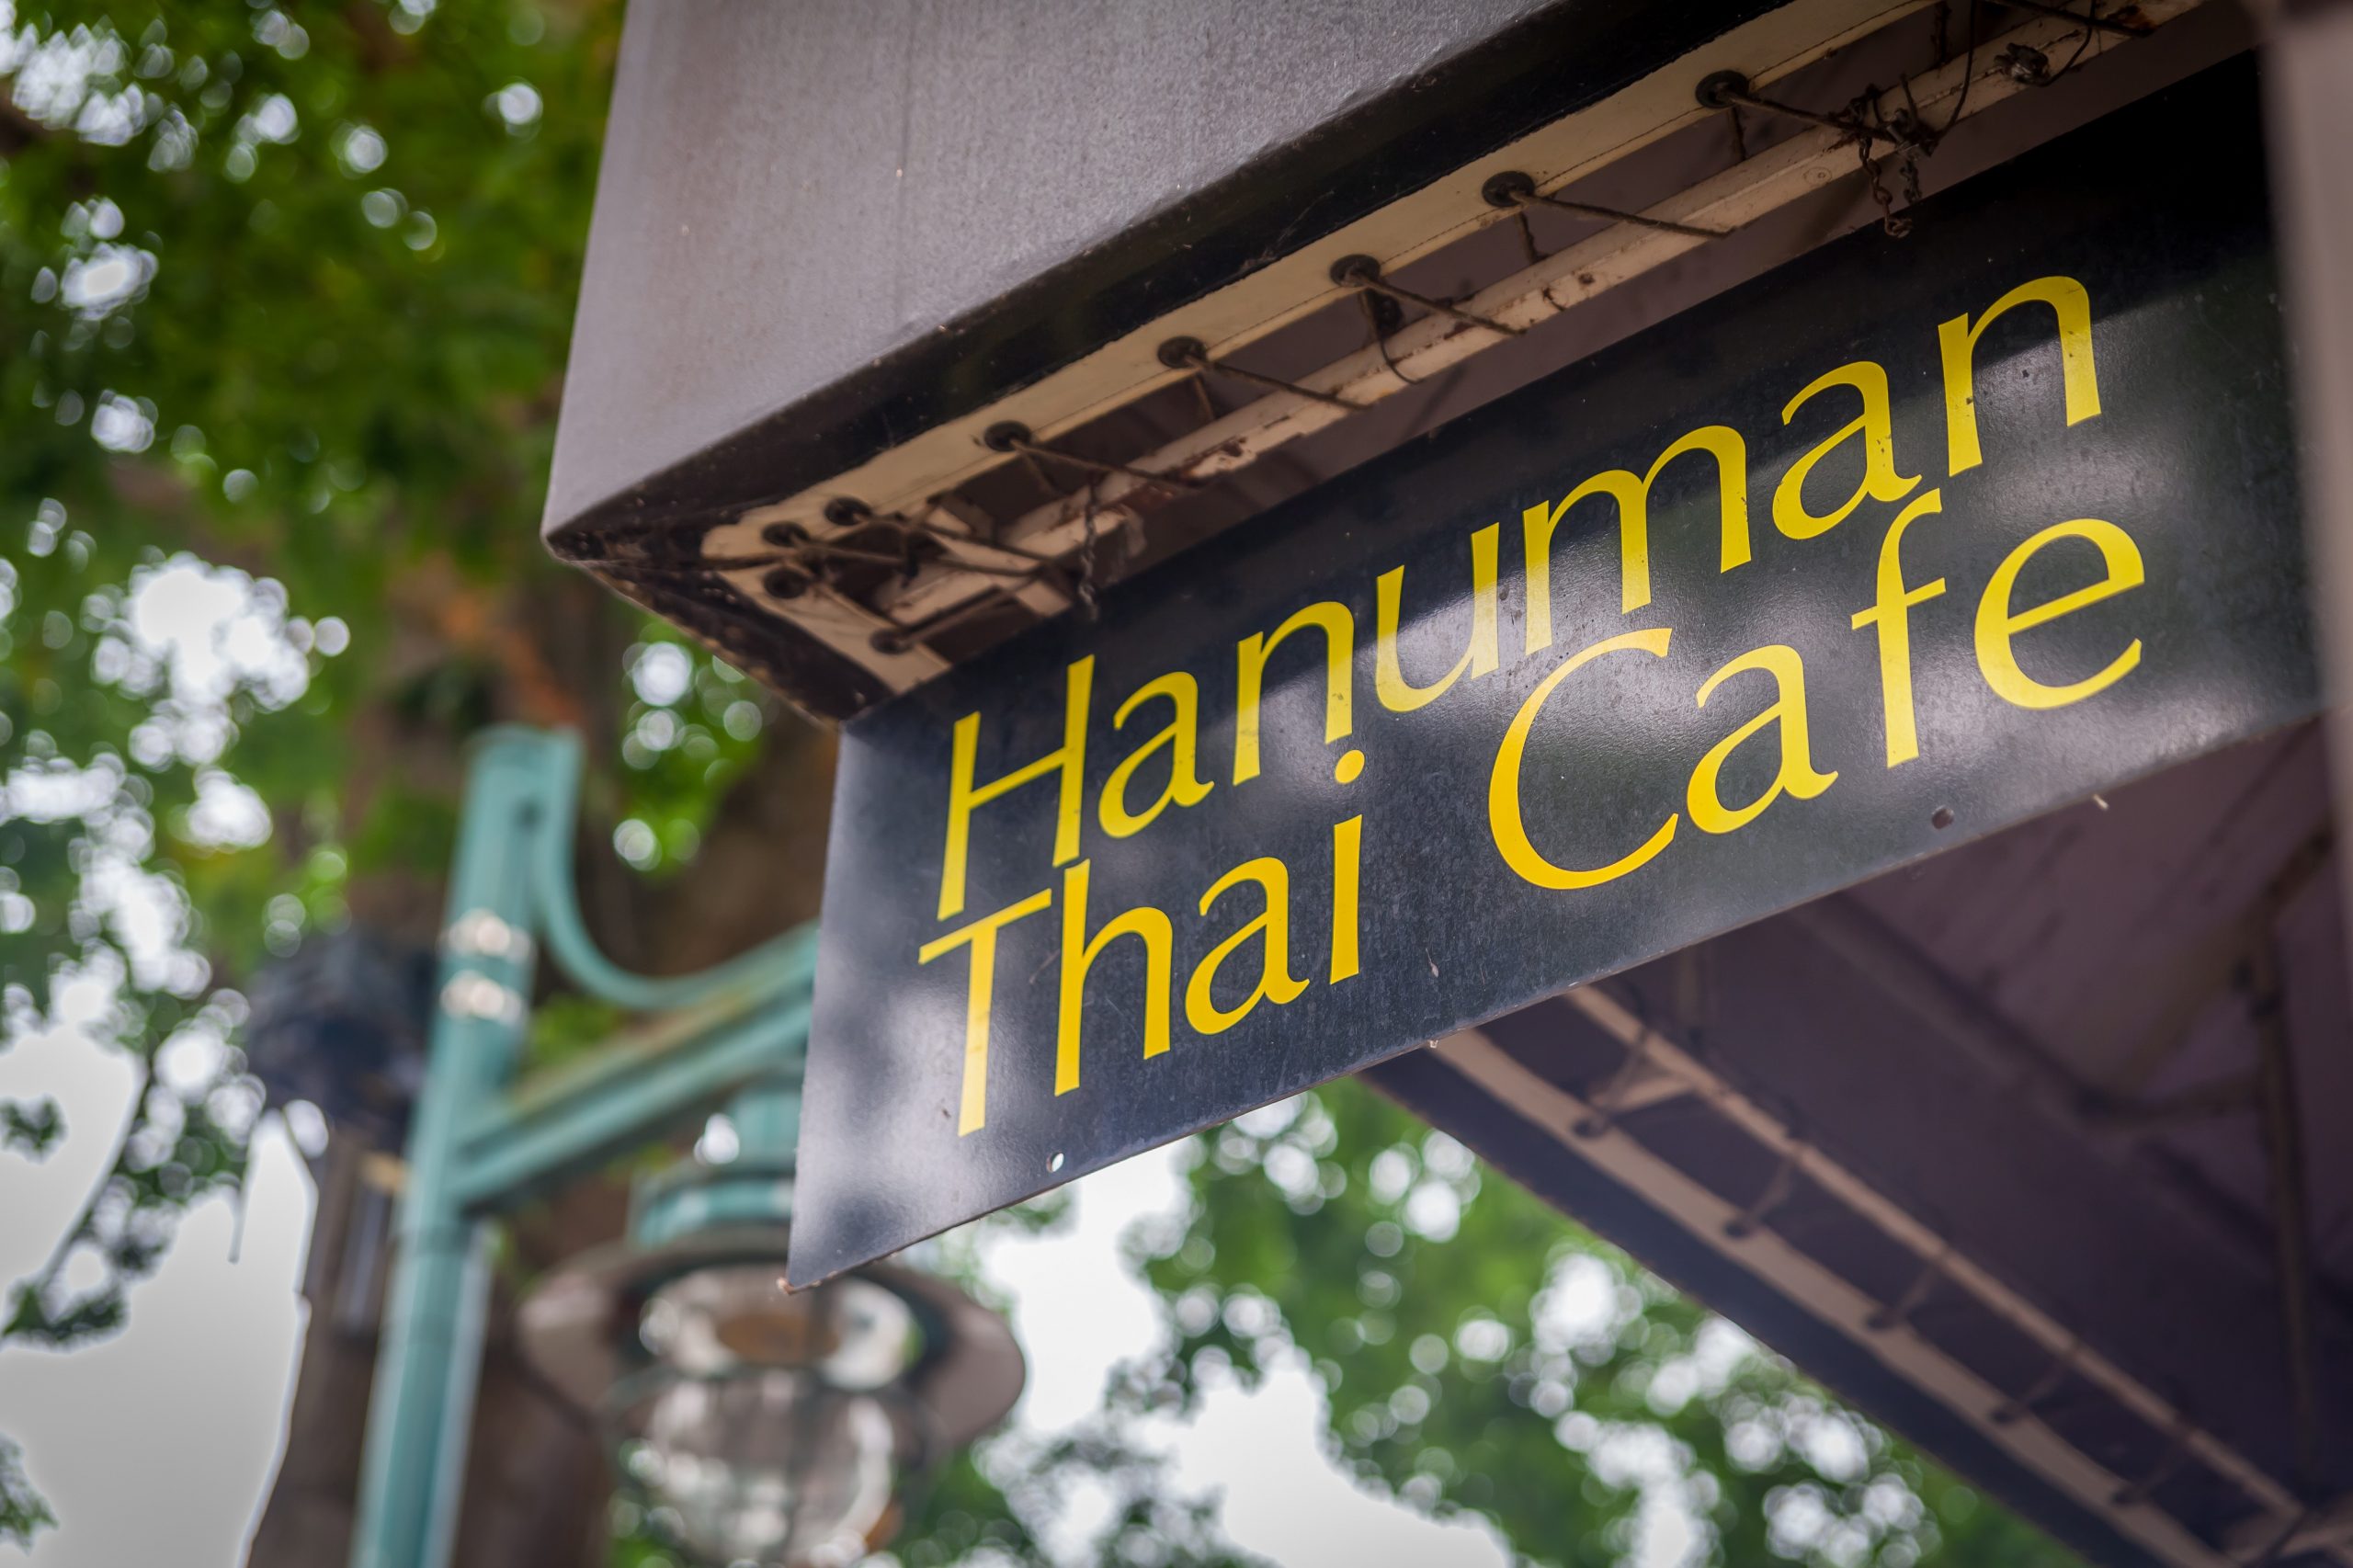 Hanuman Thai Cafe